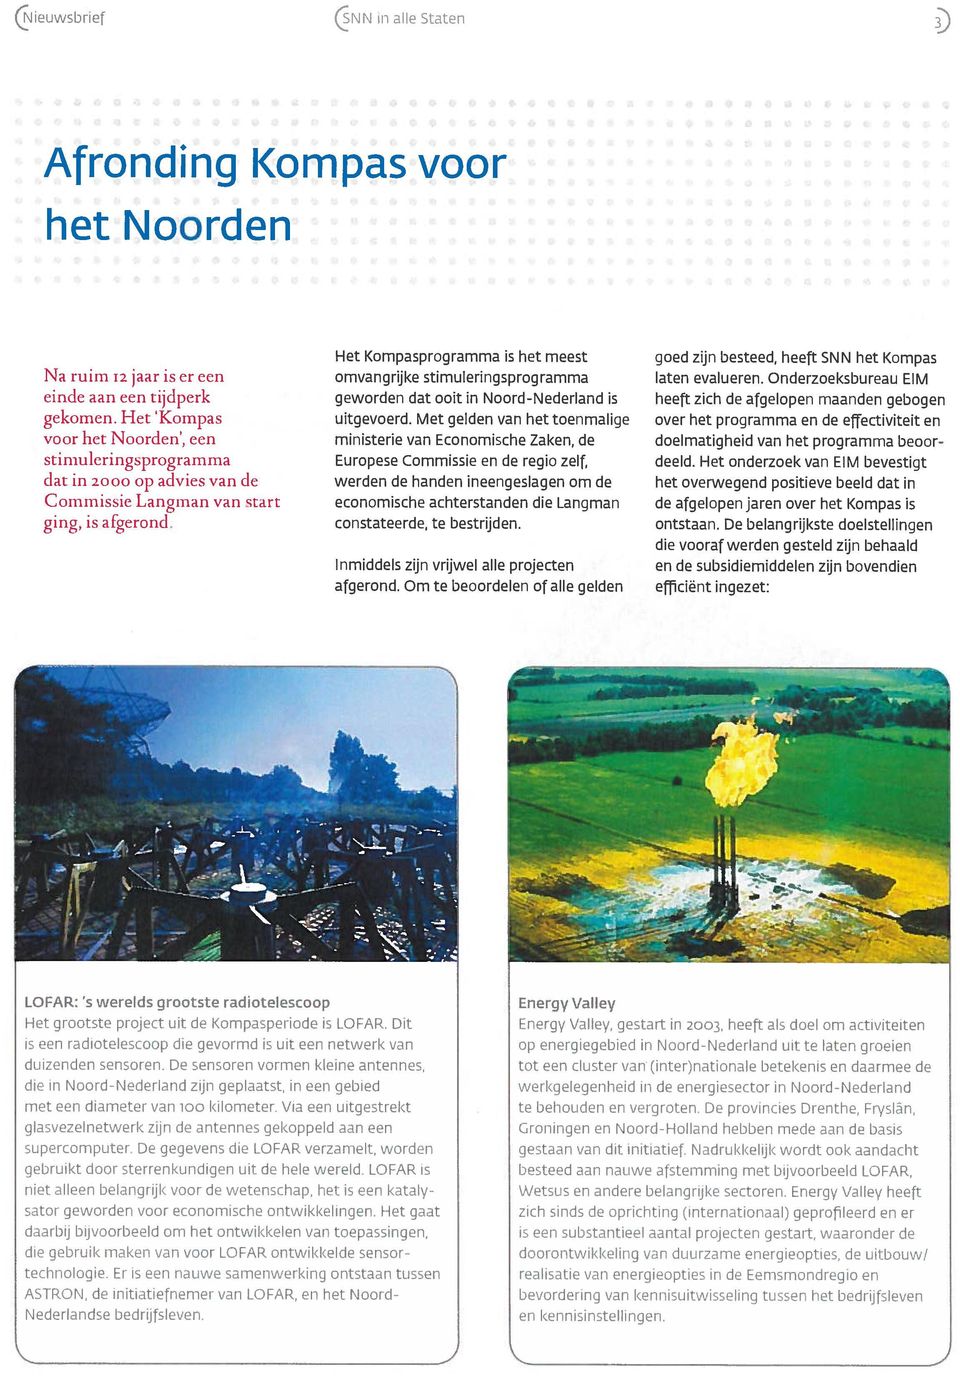 Het I<ompasprogramma is het meest omvangrijke stimuleringsprogramma geworden dat ooit in Noord-Nederland is uitgevoerd.